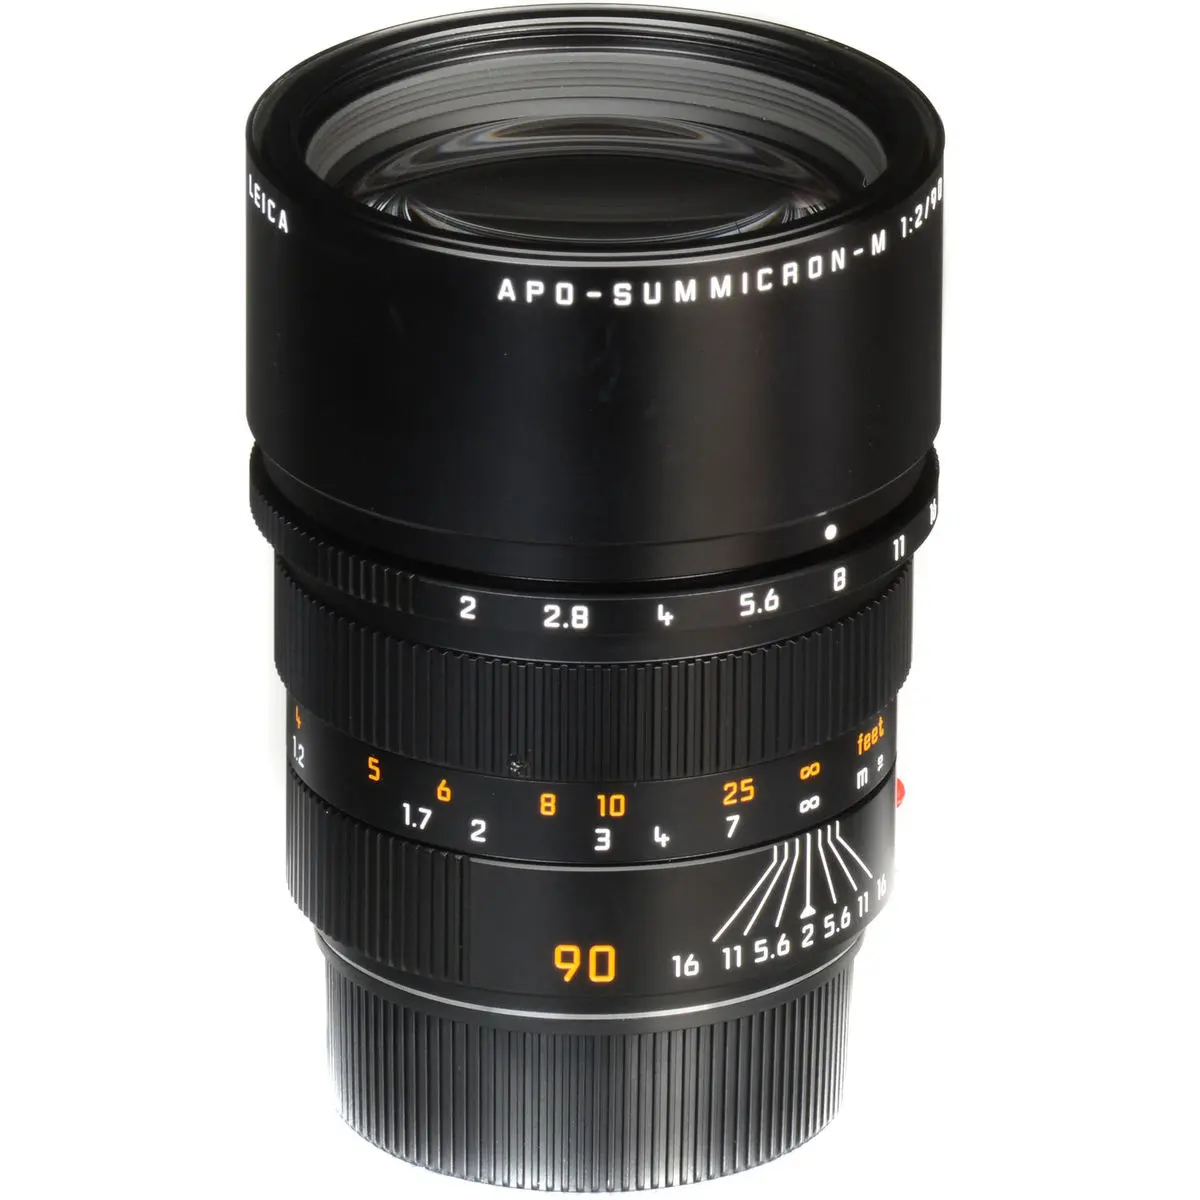 3. LEICA APO-SUMMICRON-M 90mm f/2 ASPH Lens